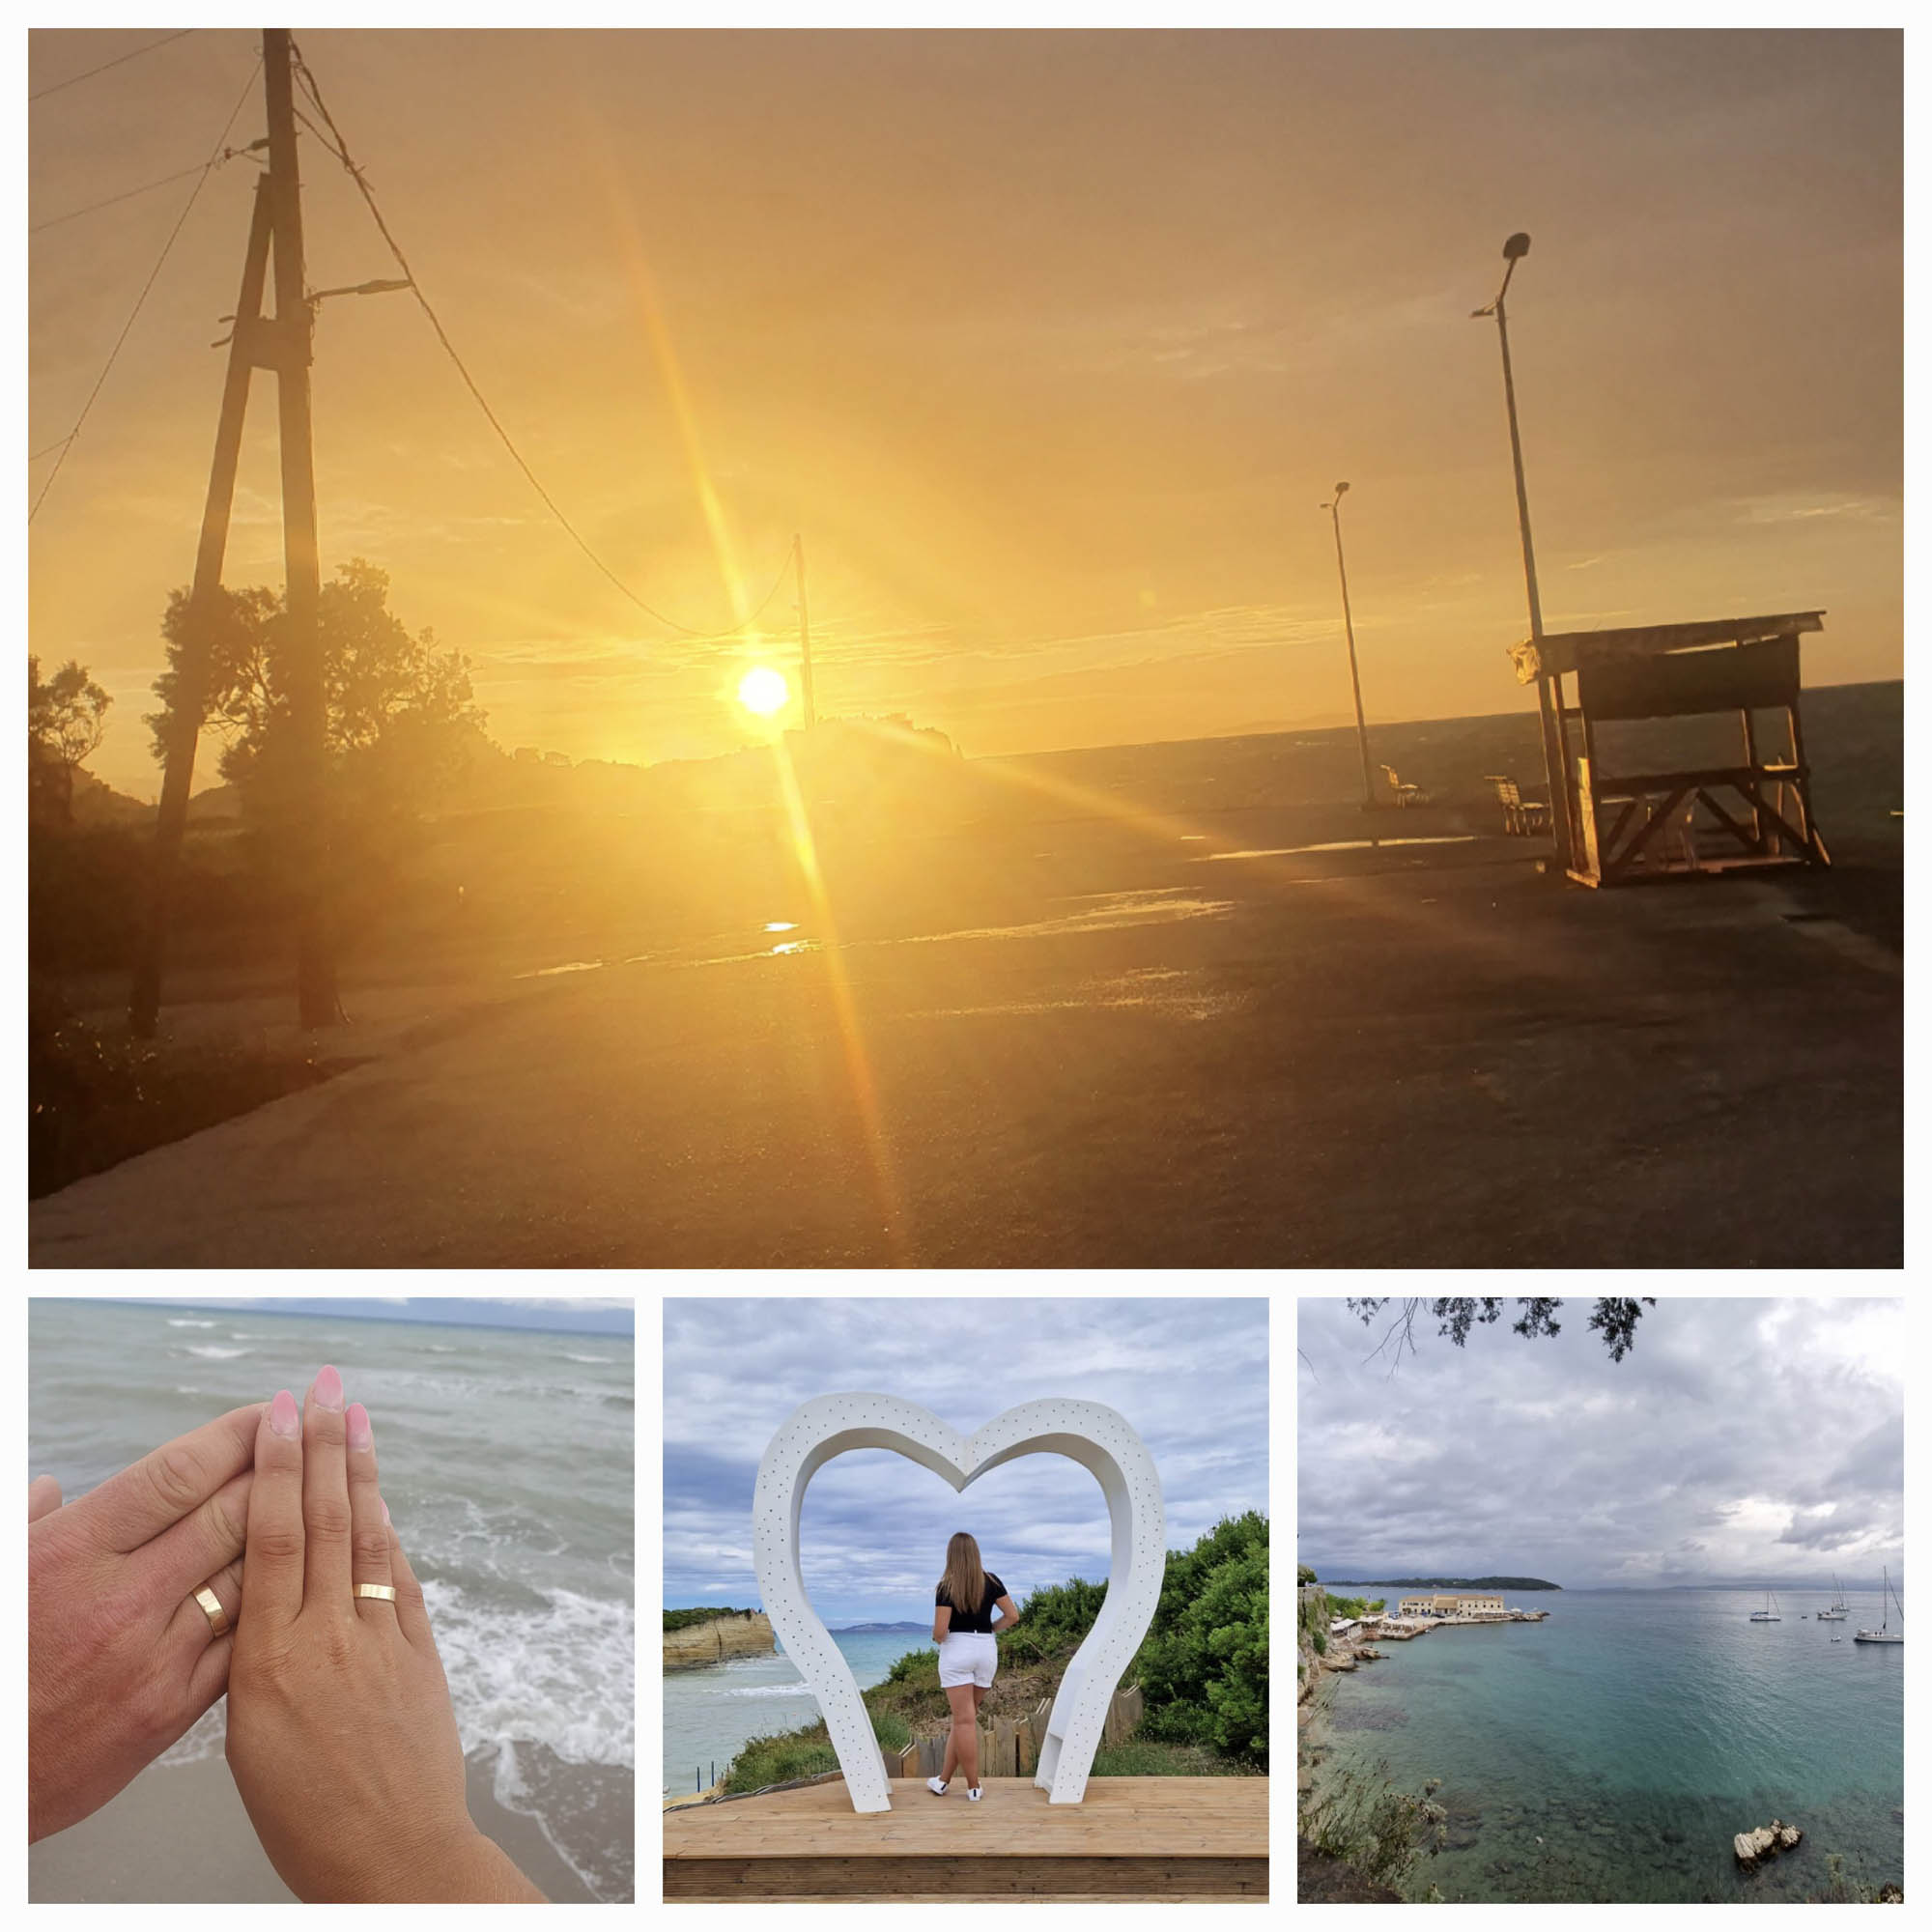 wspomnienia z wakacji, kolaż zdjęć z wyspy korfu